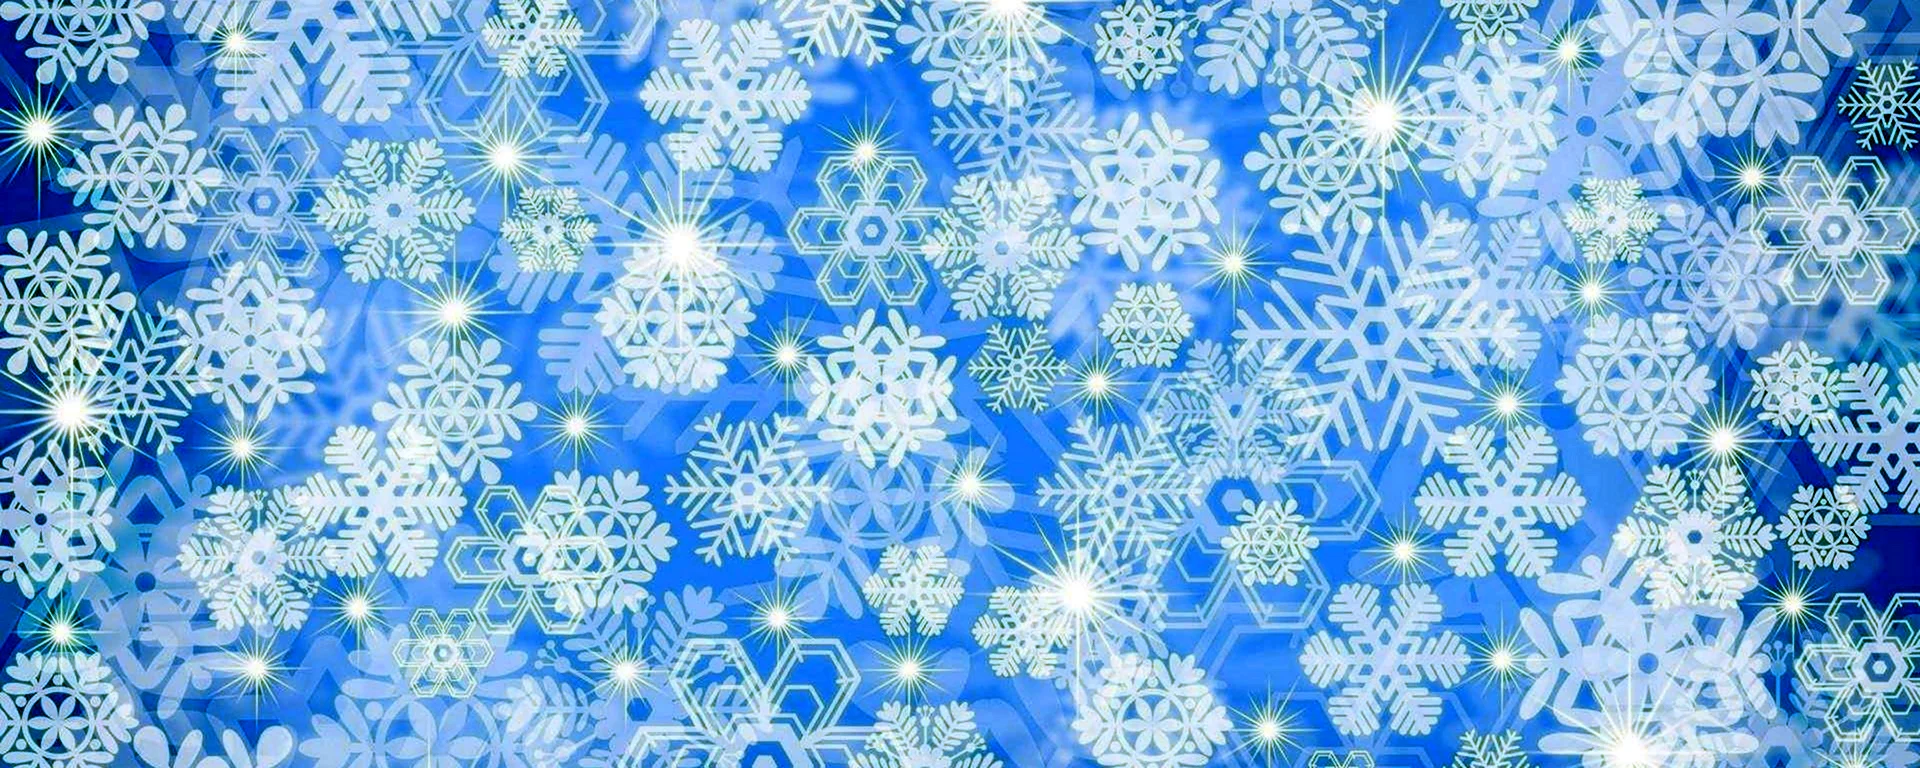 Голубые снежинки на белом фоне